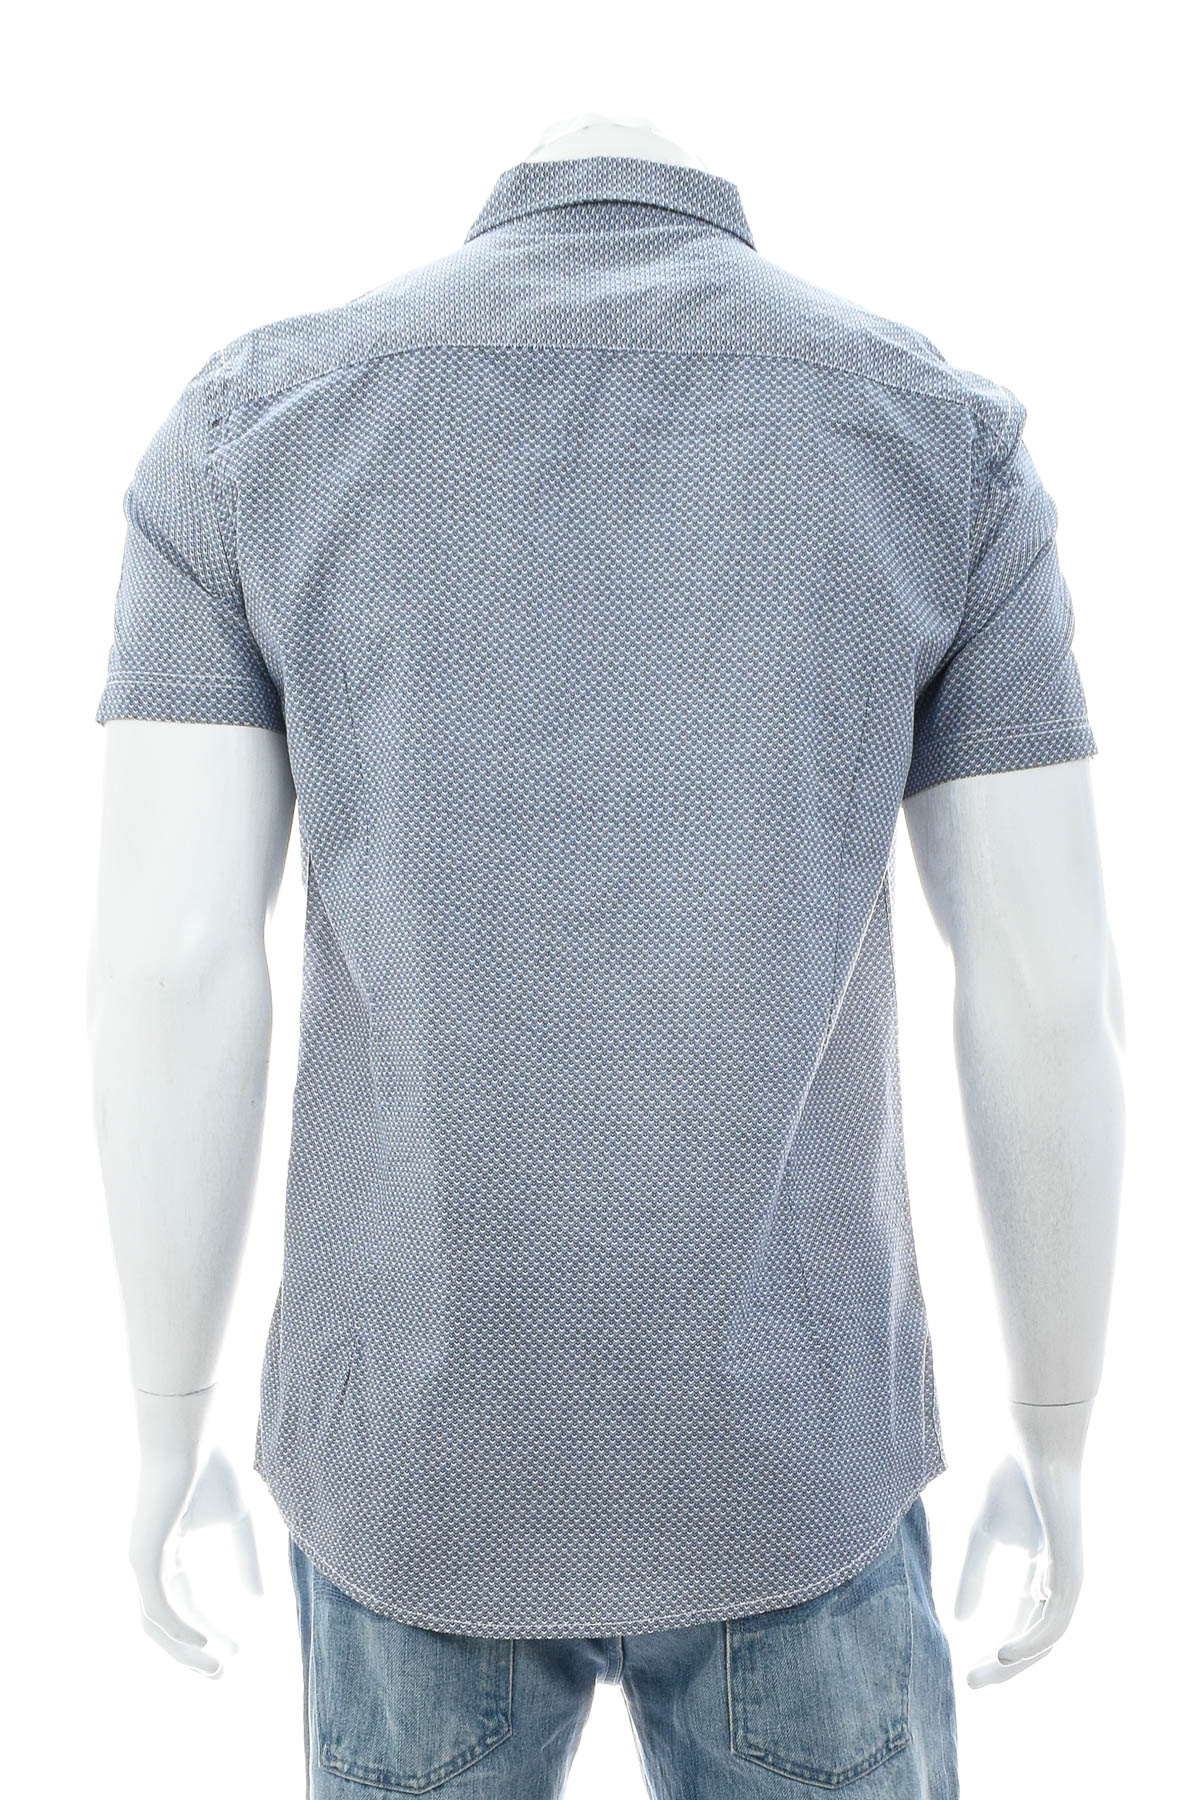 Ανδρικό πουκάμισο - RAY - 1